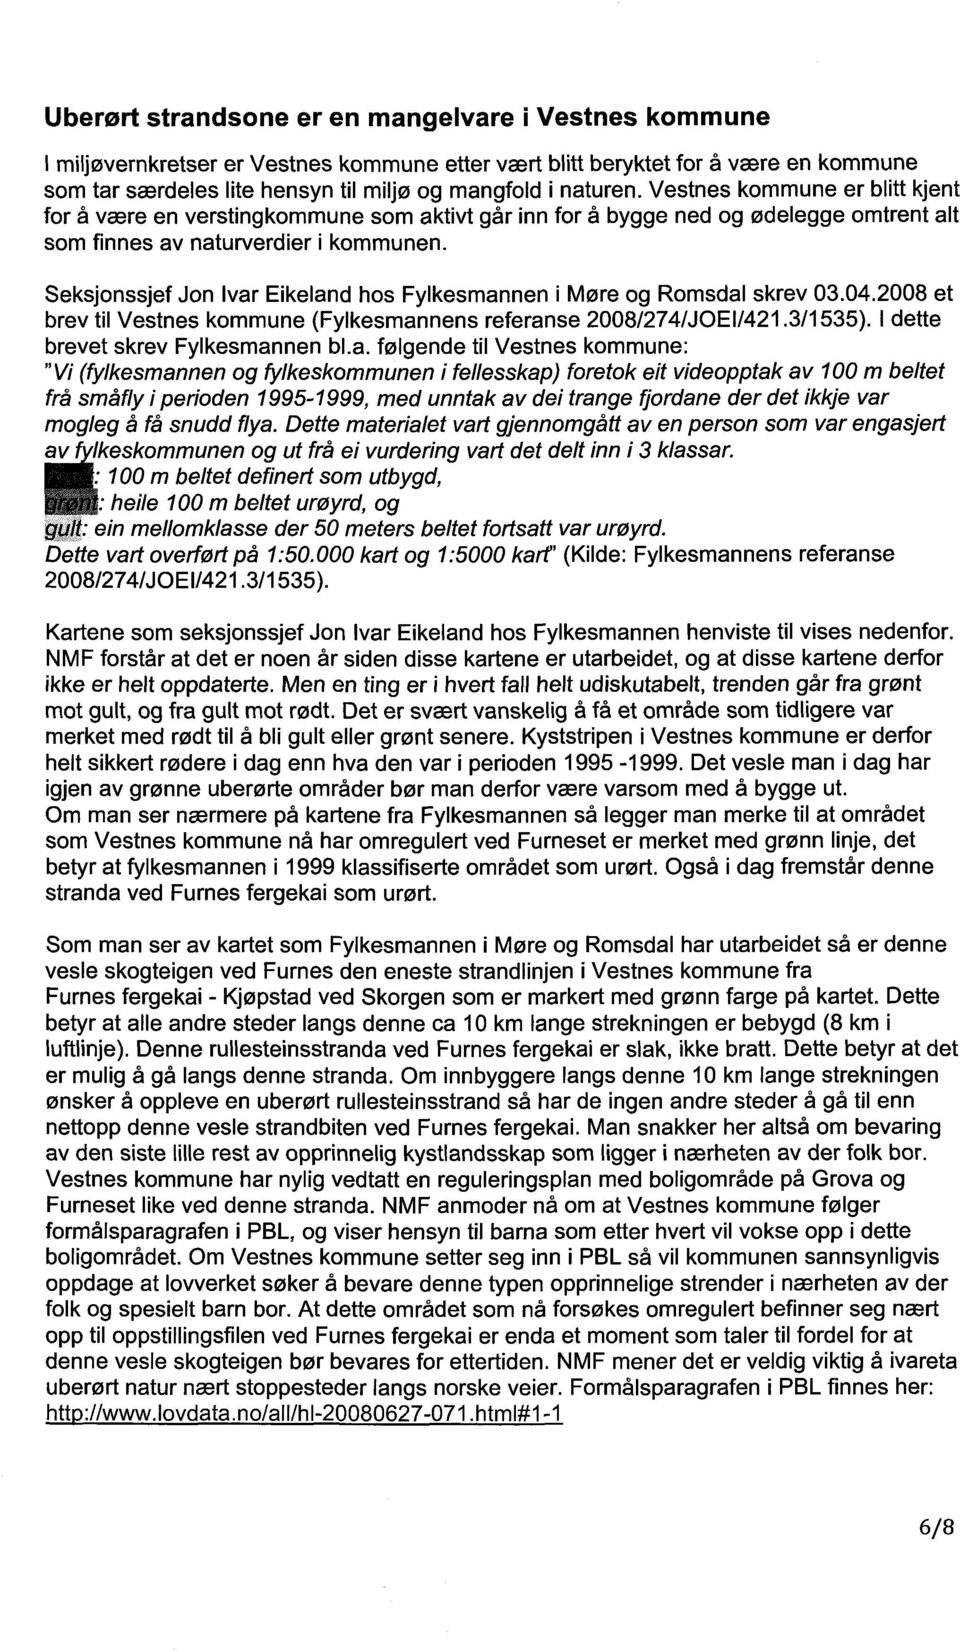 Seksjonssjef Jon Ivar Eikeland hos Fylkesmannen i Møre og Romsdal skrev 03.04.2008 et brev til Vestnes kommune (Fylkesmannens referanse 2008/274/JOEI/421.3/1535). I dette brevet skrev Fylkesmannen bl.